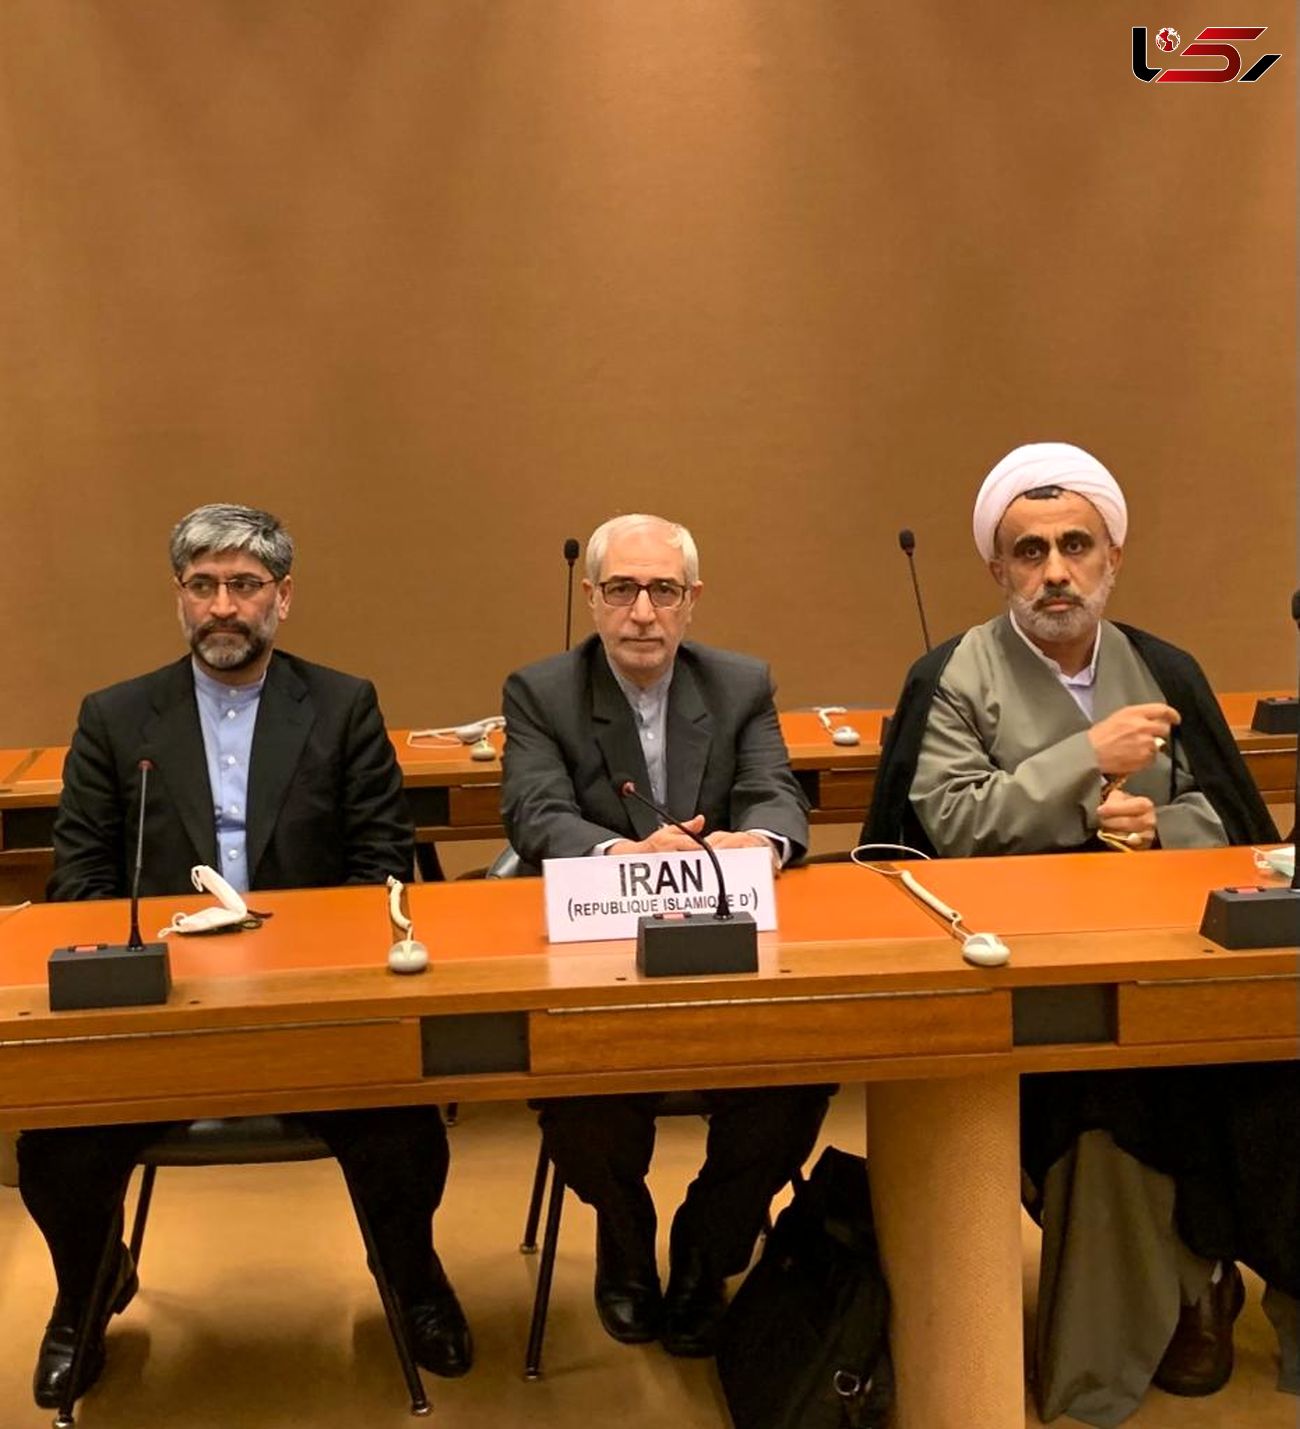 حقوق ملت ایران در مقابل تروریسم اقتصادی برای جهانیان تبیین شود